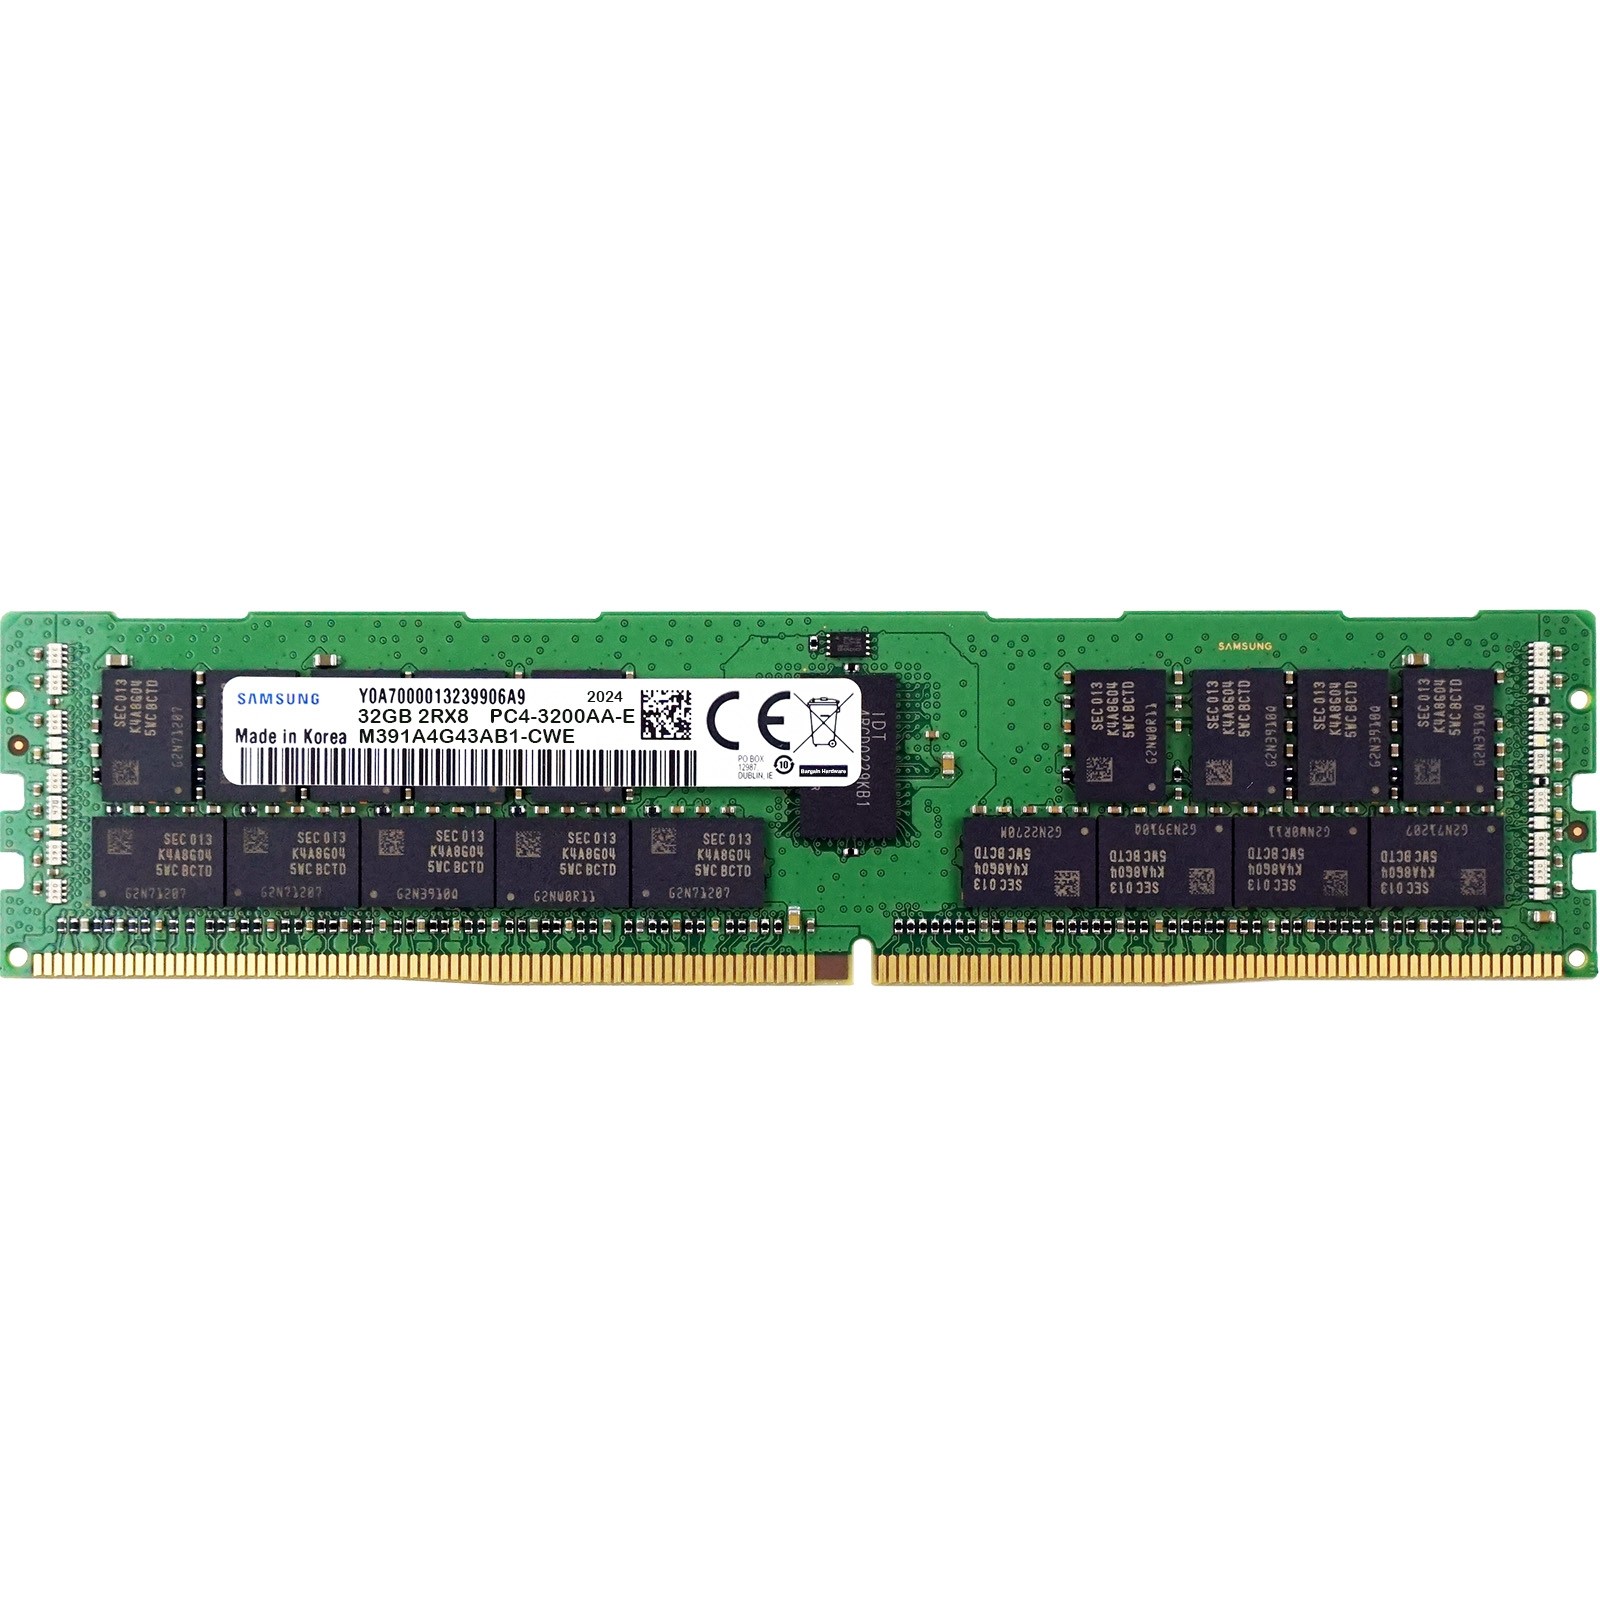 Samsung (M391A4G43AB1-CWE) - 32GB PC4-25600AA-E (2RX8, DDR4-3200MHz) RAM